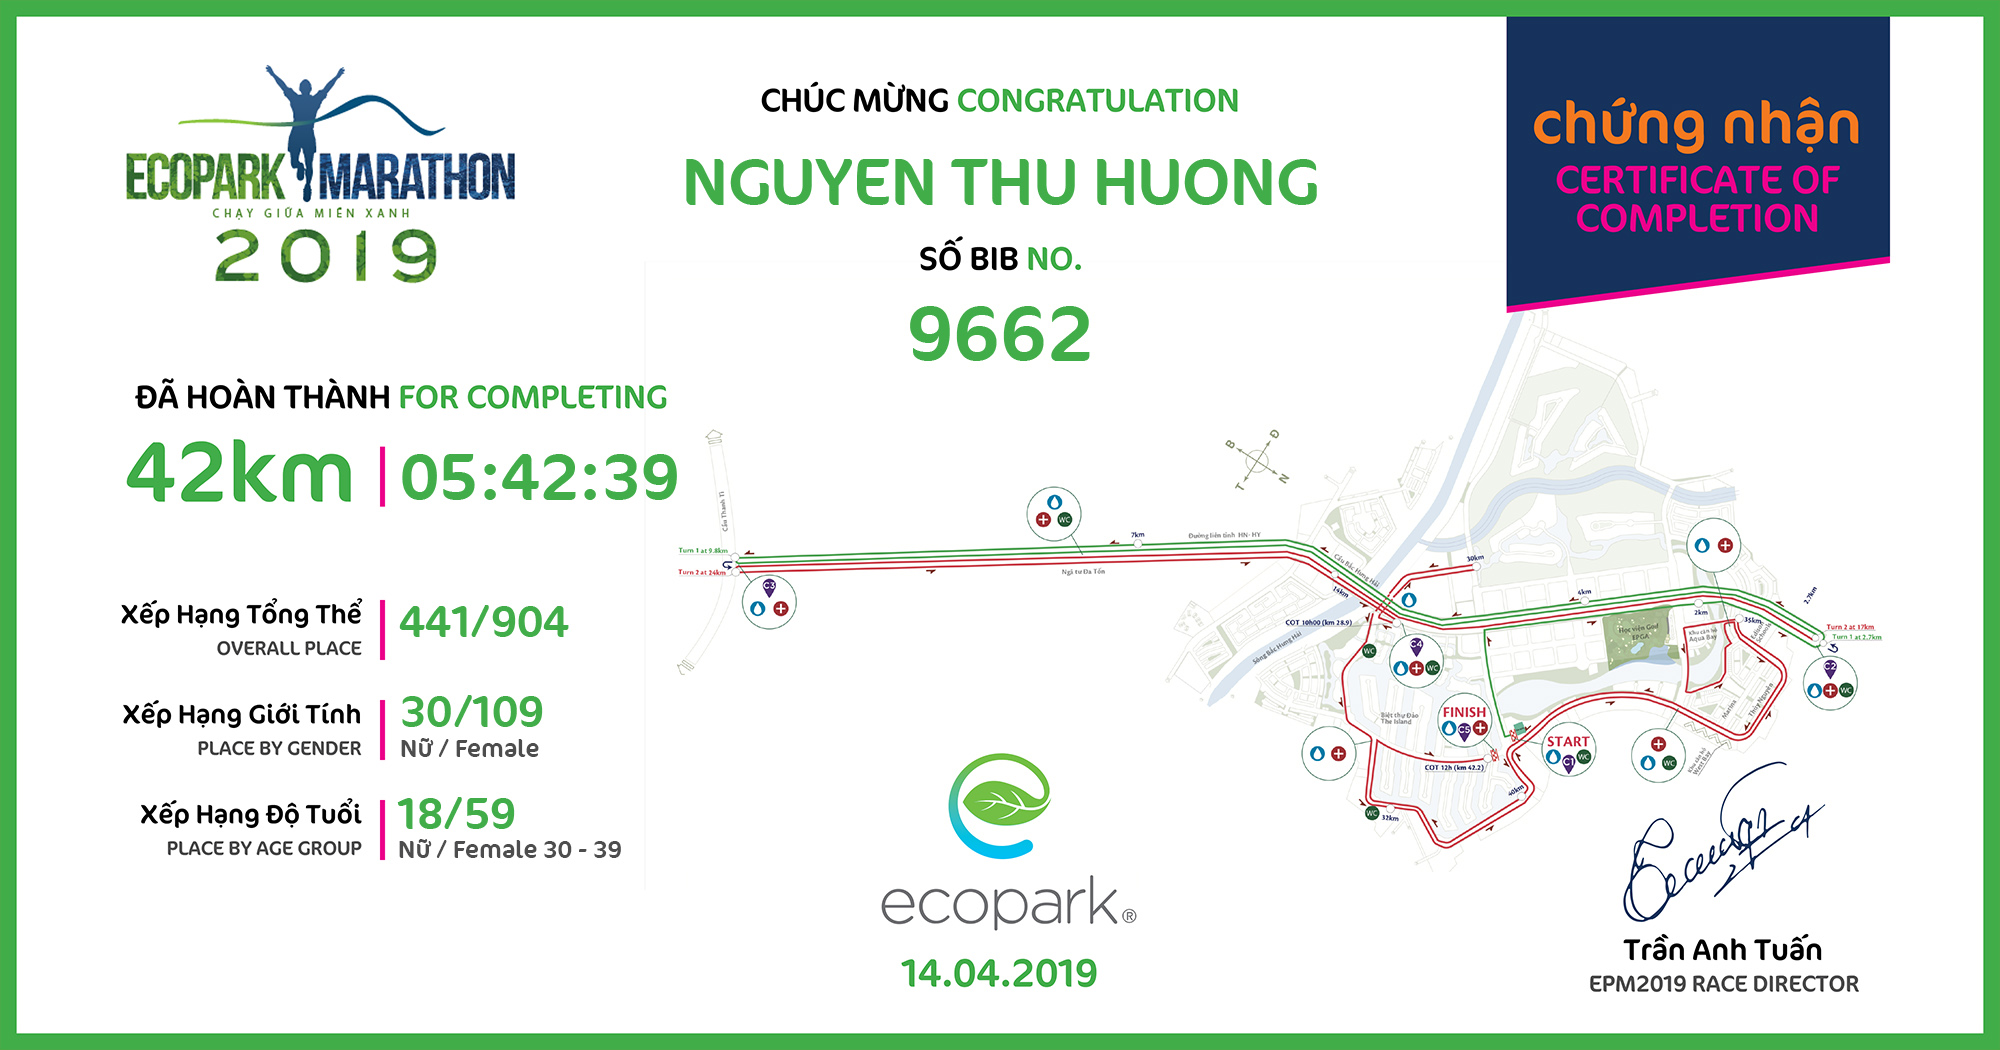 9662 - Nguyen thu huong